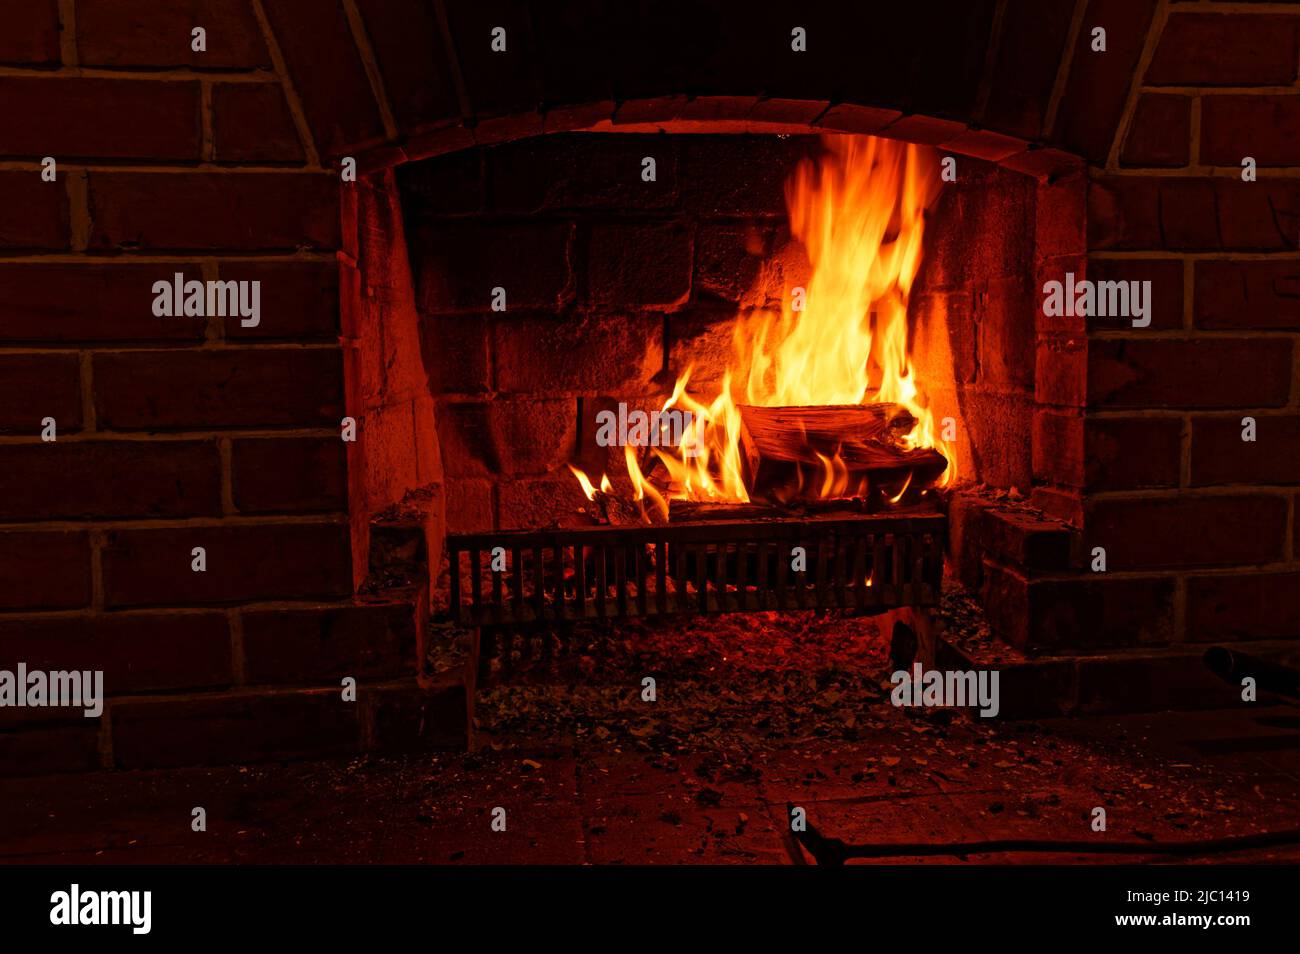 Calor invernal, un fuego abierto arde brillantemente Foto de stock